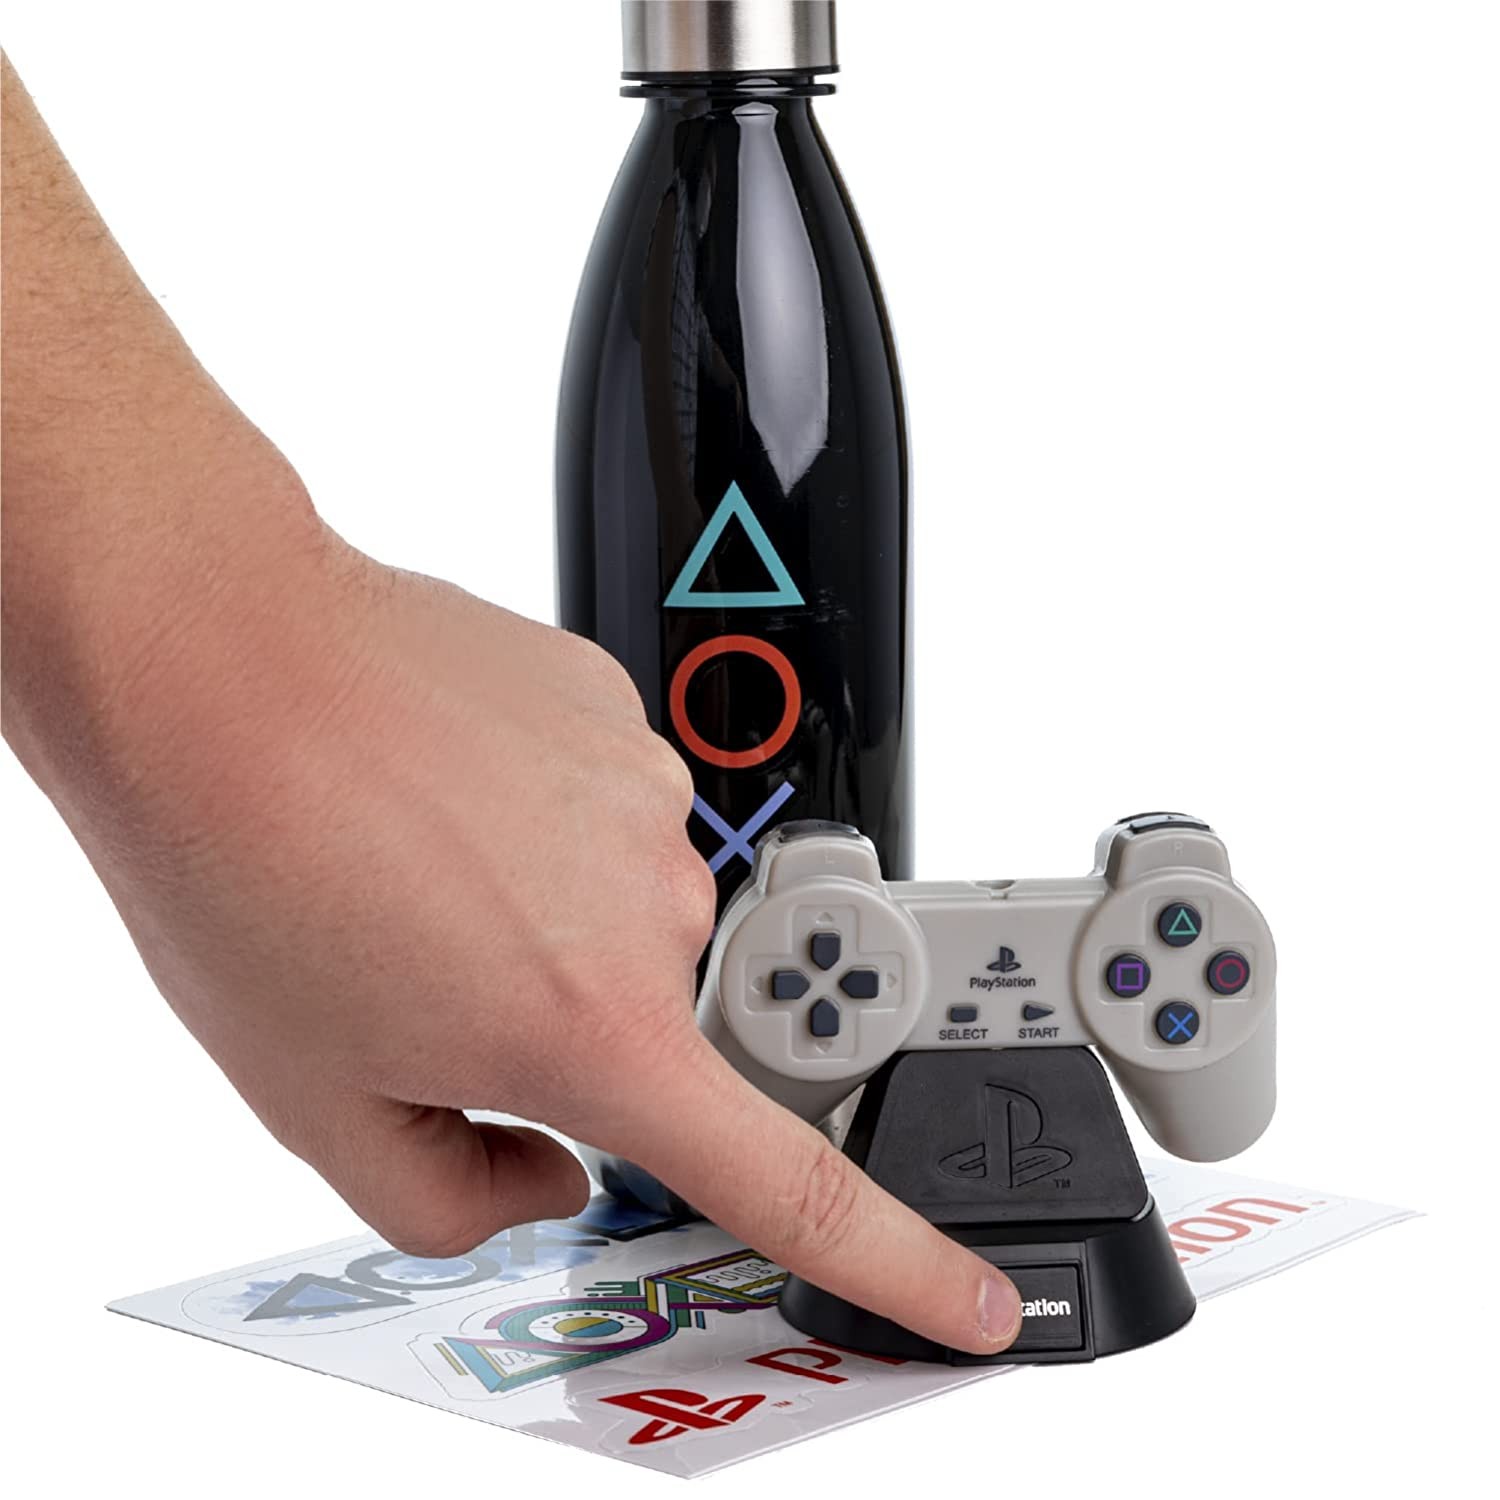 Playstation Icon gaisma, pudeļu un uzlīmju dāvanu komplekts